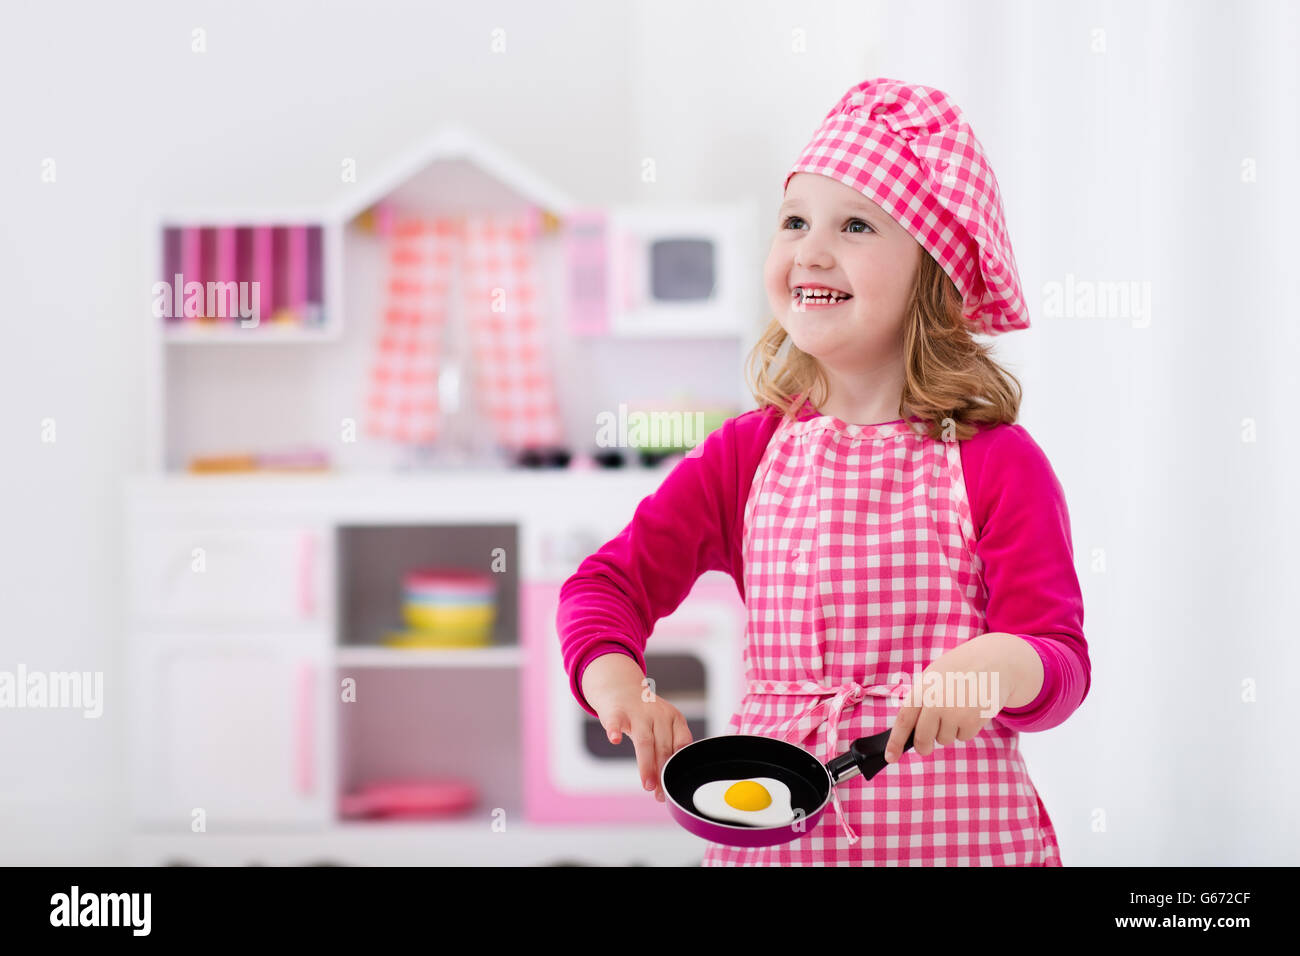 Niña y Niño en chef hat delantal y cocinar en una cocina de juguete.  Juguetes educativos para niños Fotografía de stock - Alamy